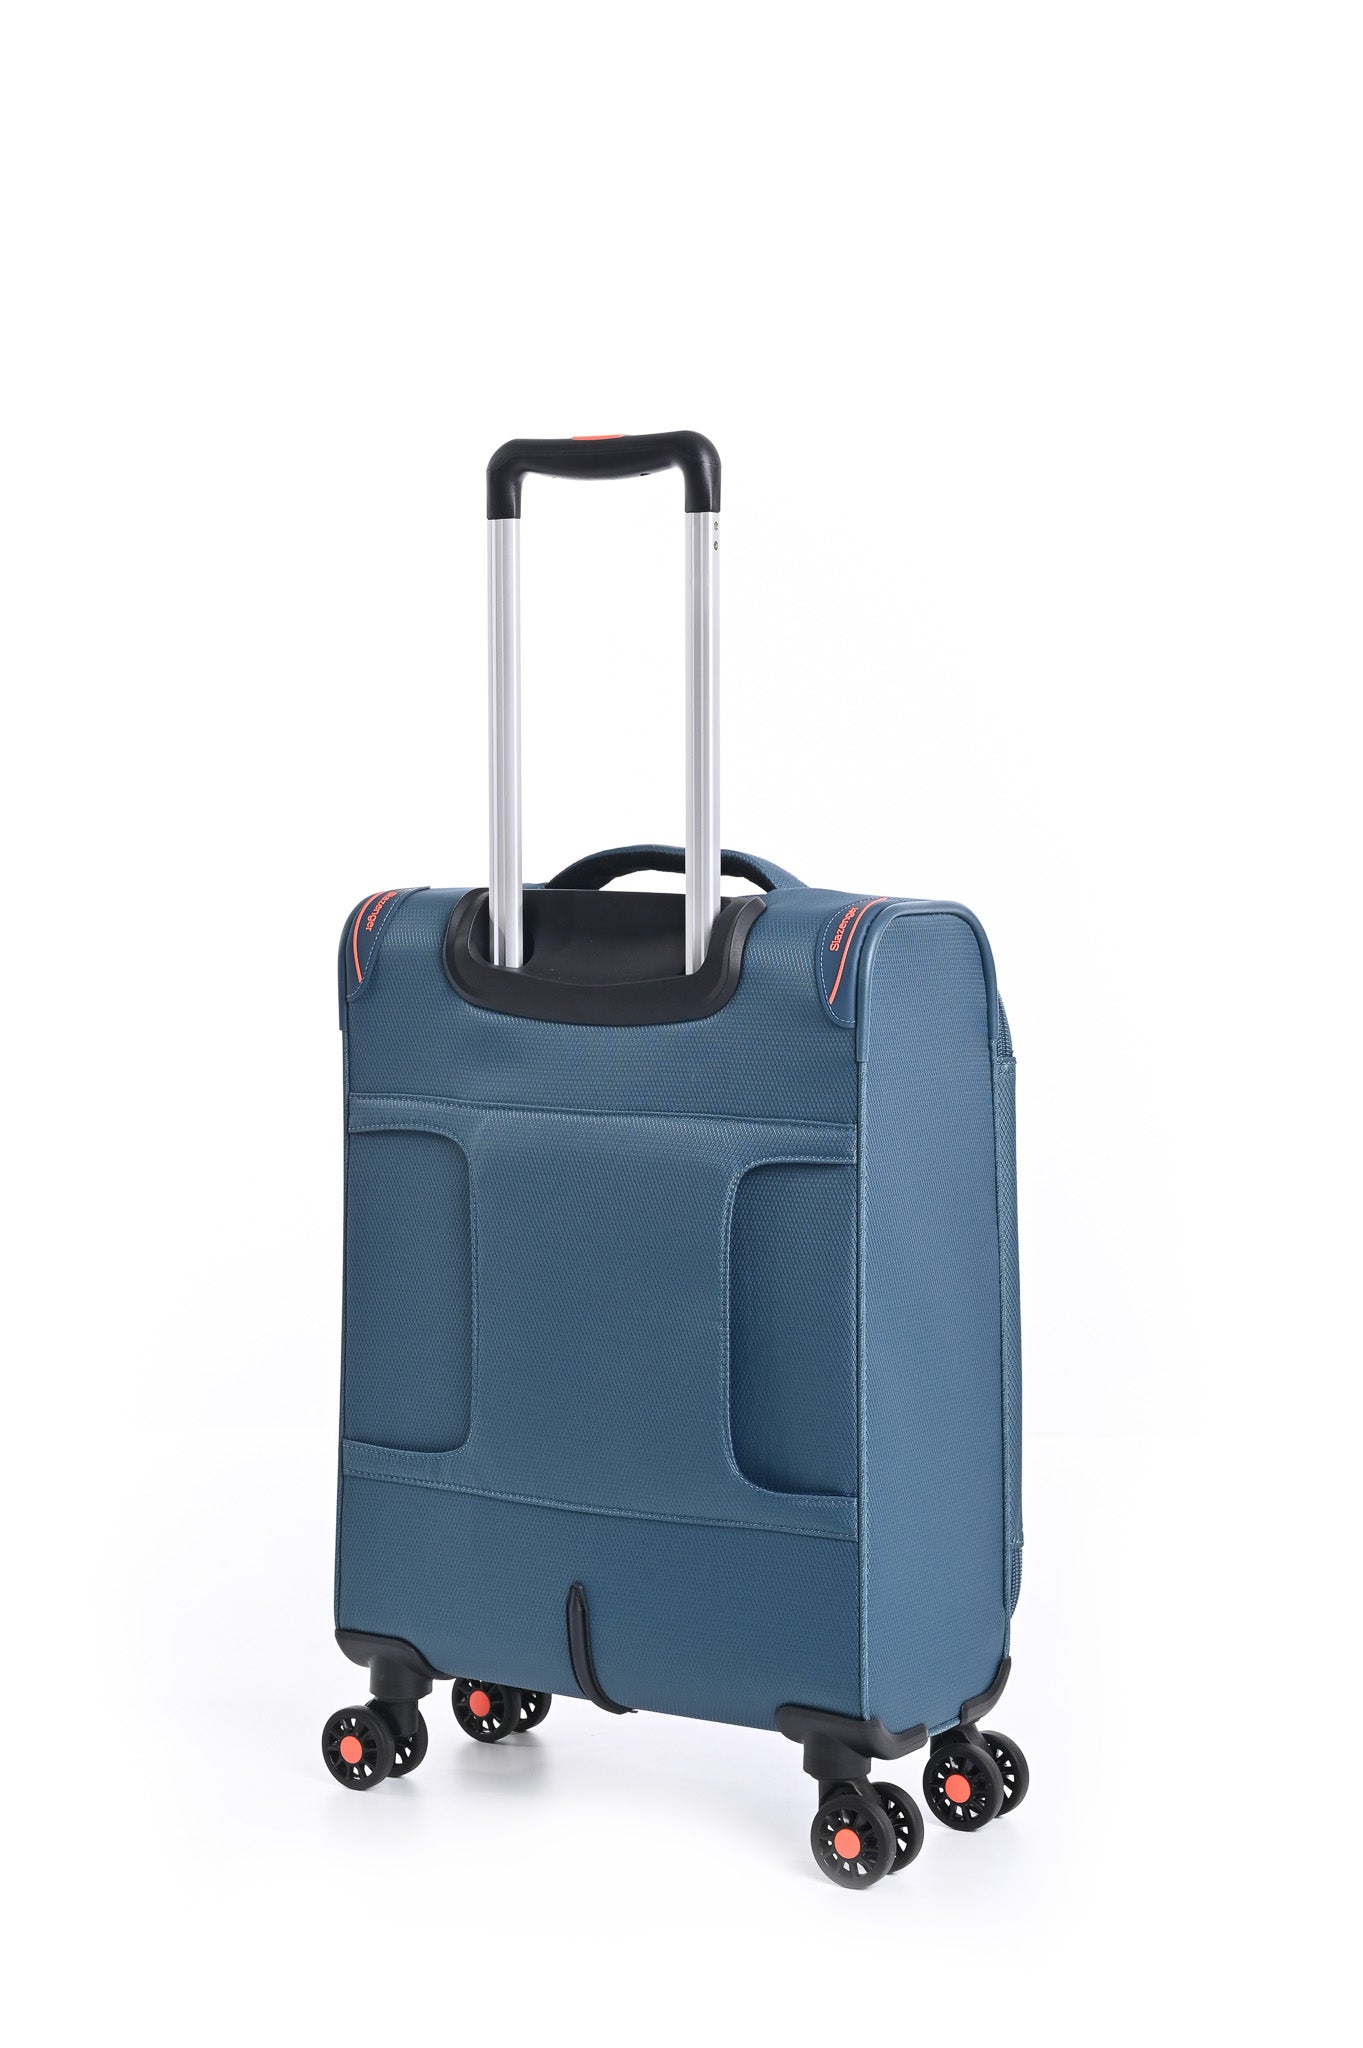 מזוודה טרולי עלייה למטוס ''18.5 דגם BARCELONA בצבע נייבי